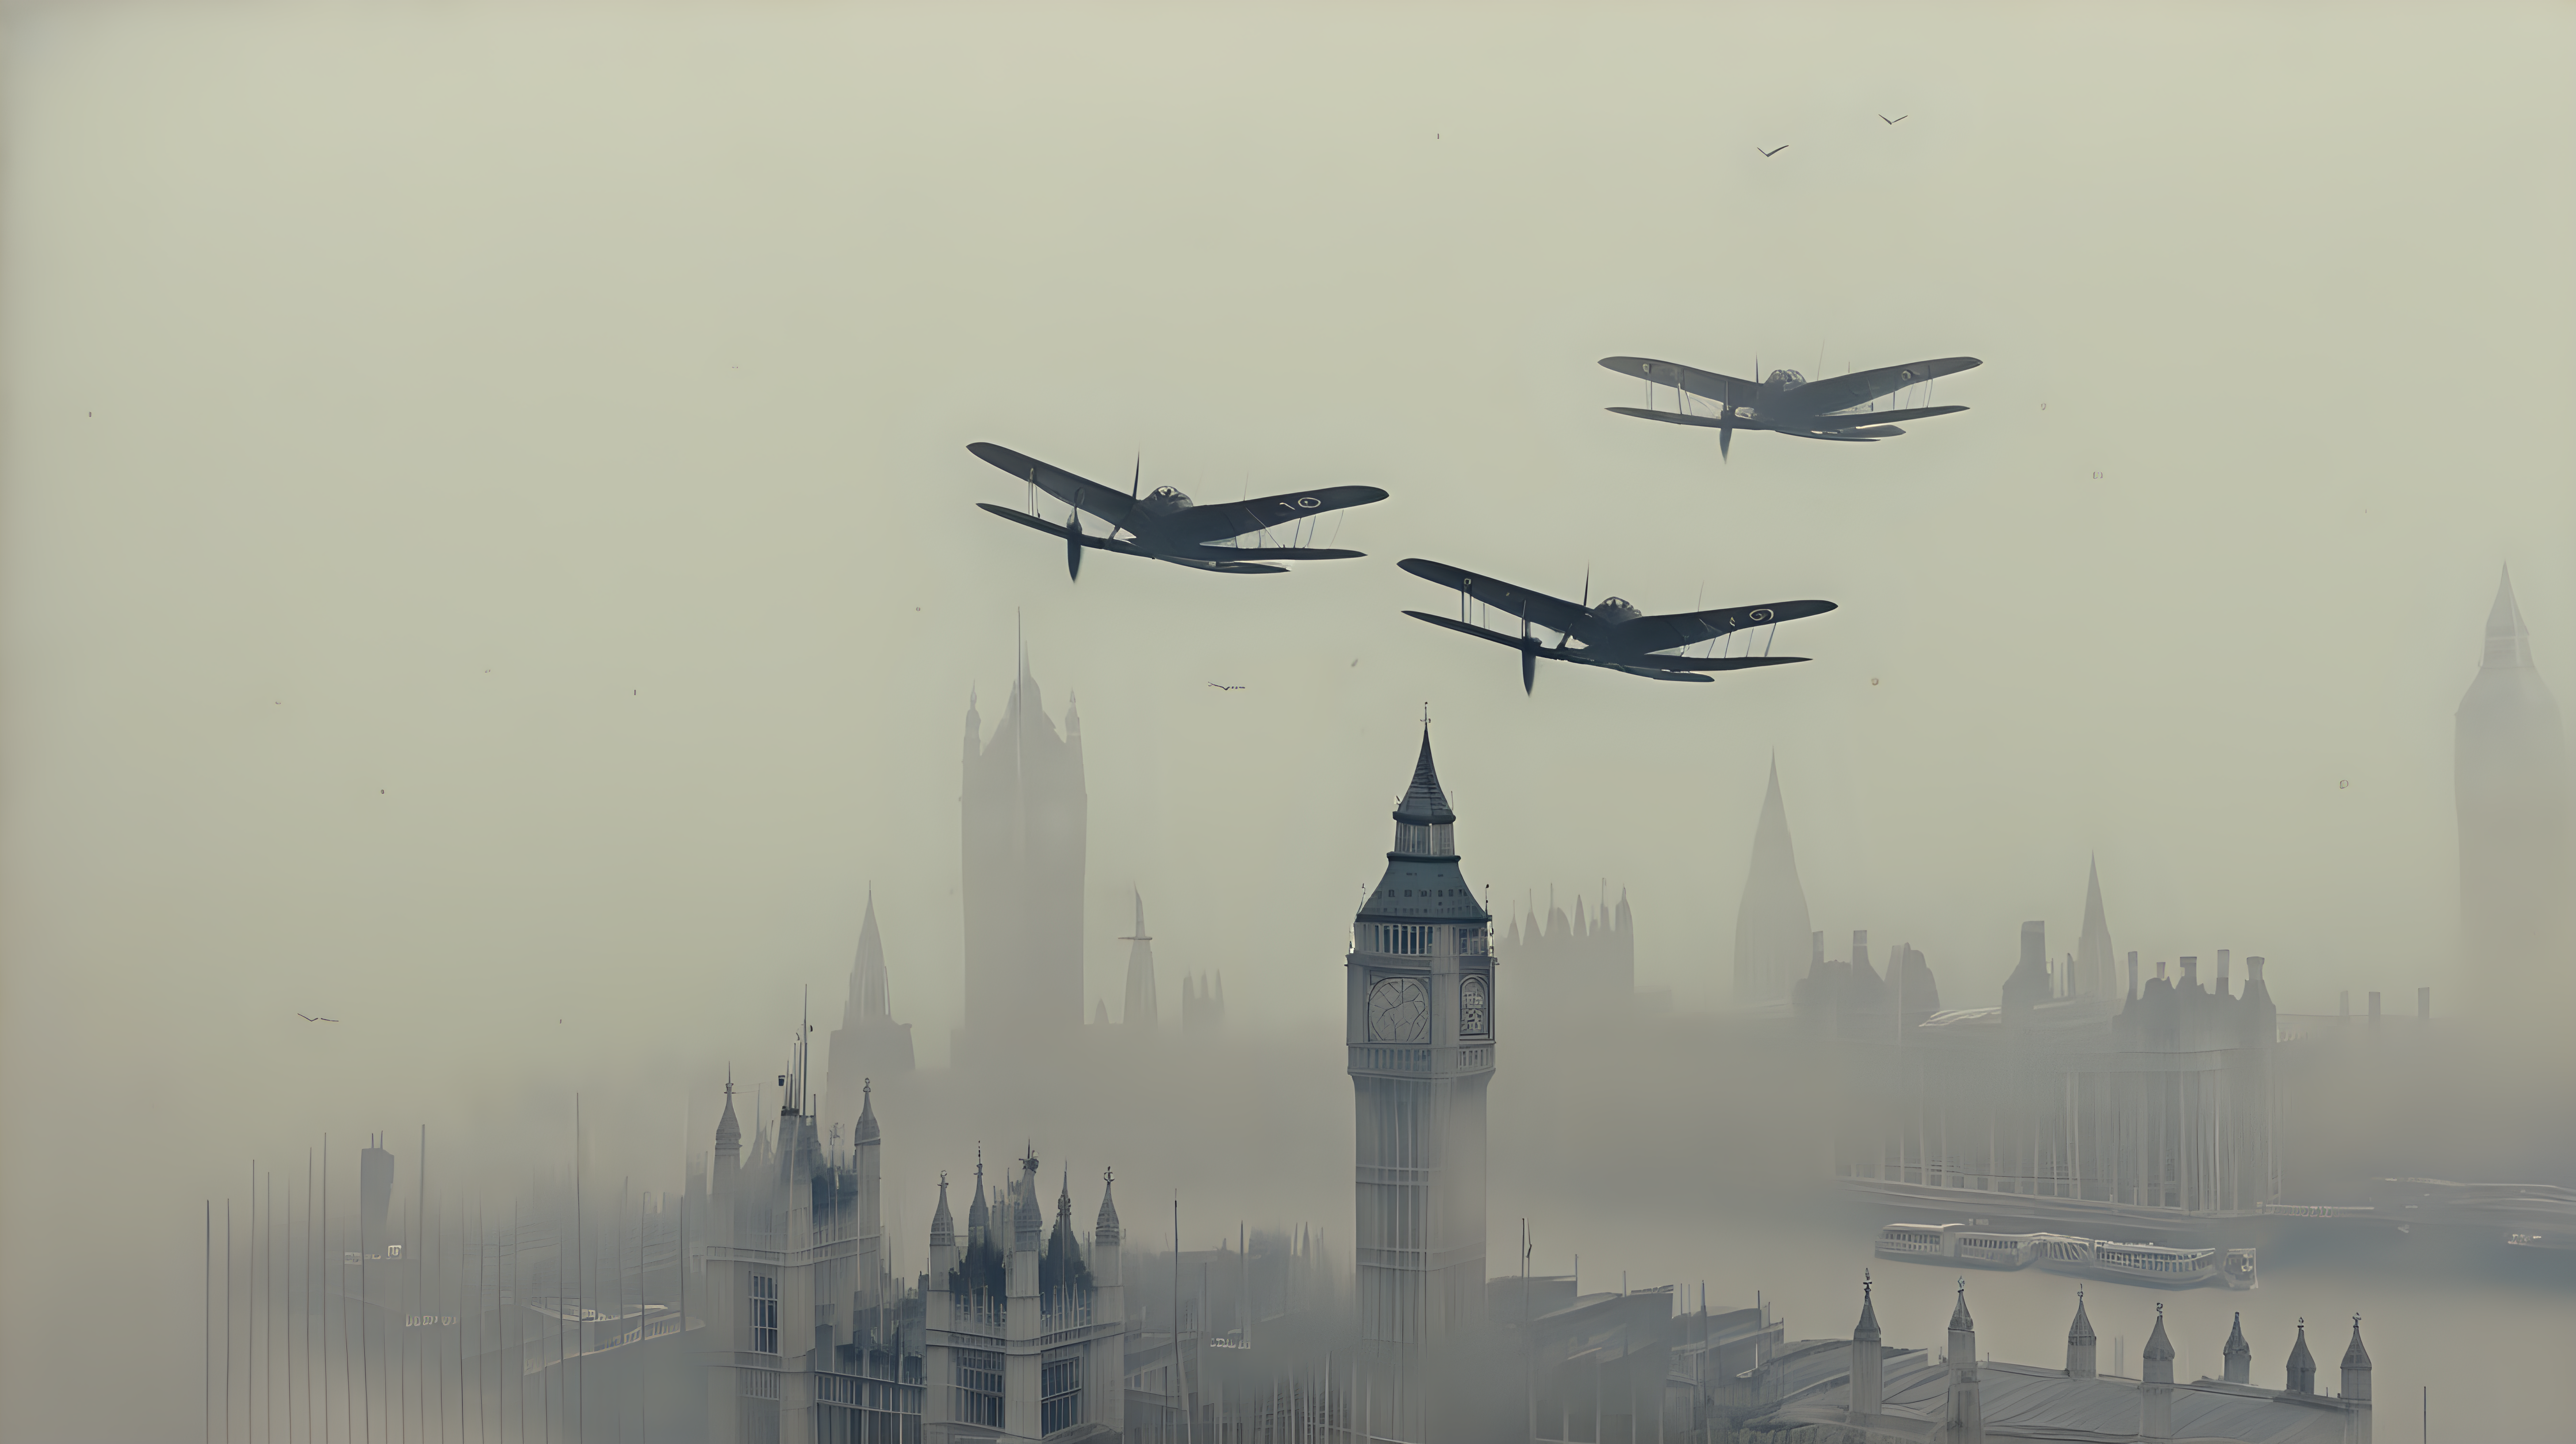 WW fighter planes flying over London bridge shrouded in fog 